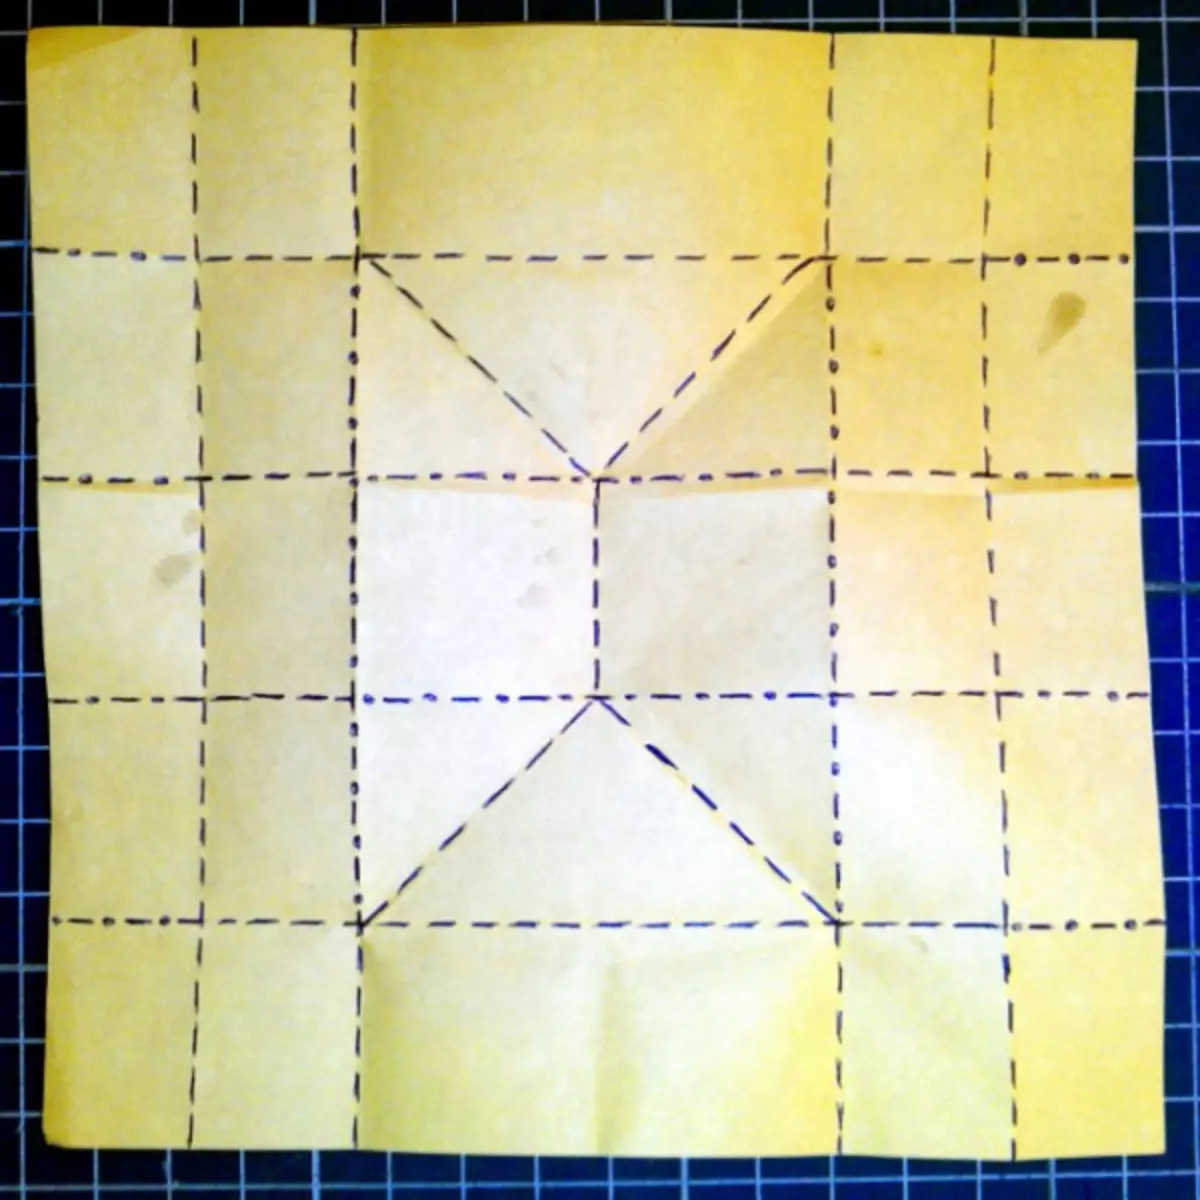 Оригами хартија кутија Направете го тоа сами со капак и изненадување